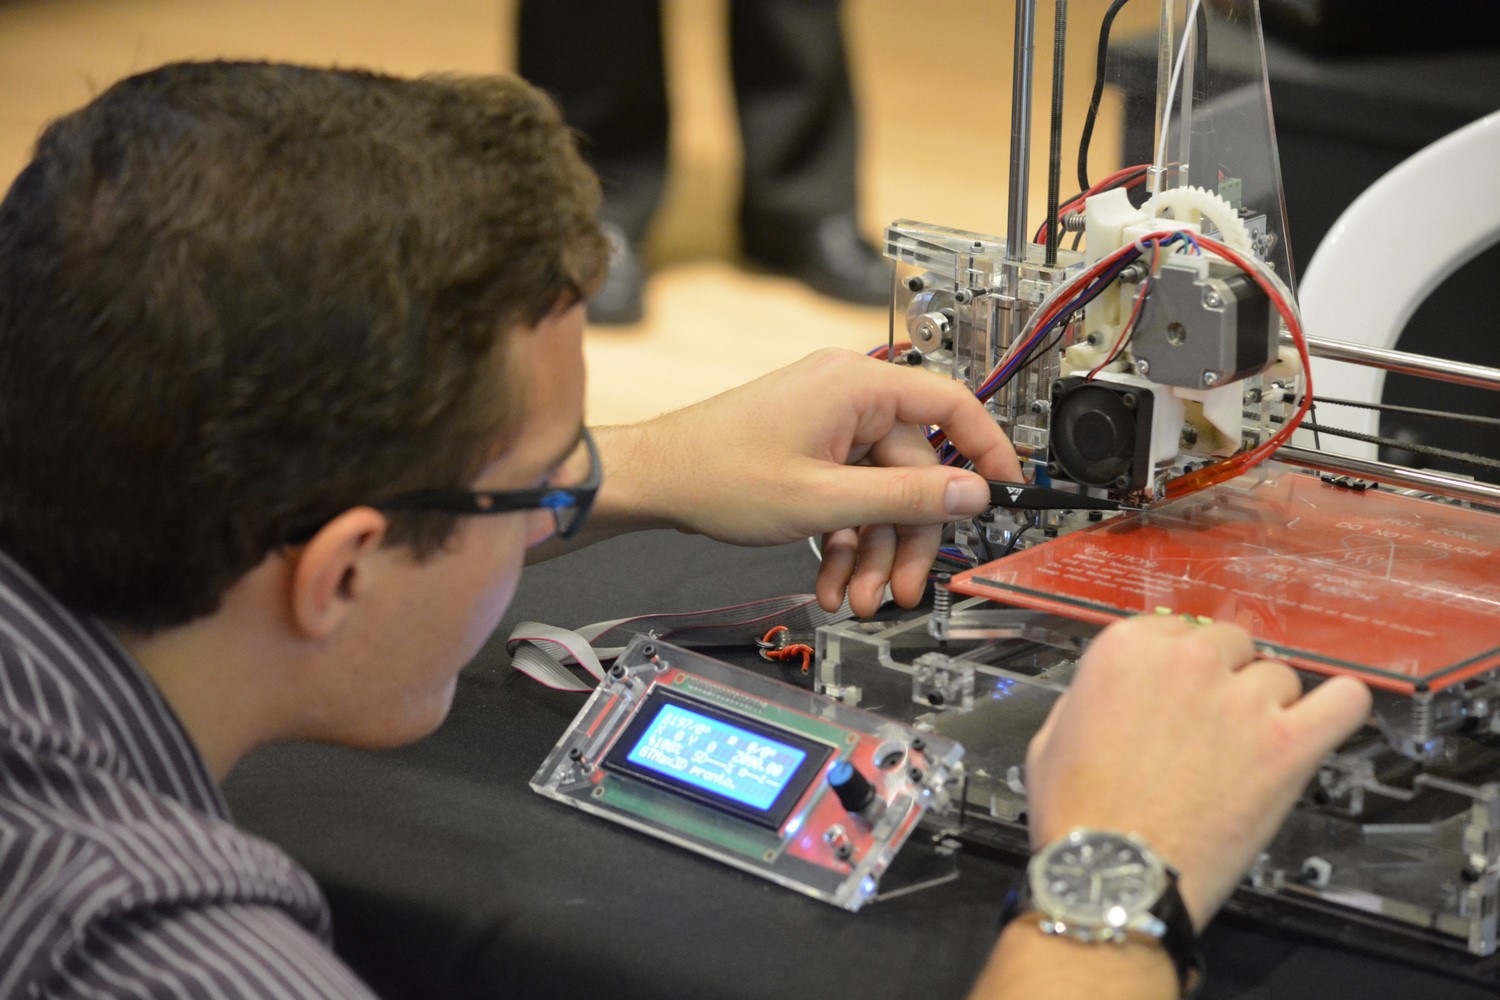 Robôs e impressoras 3D atraem olhares de curiosos no shopping